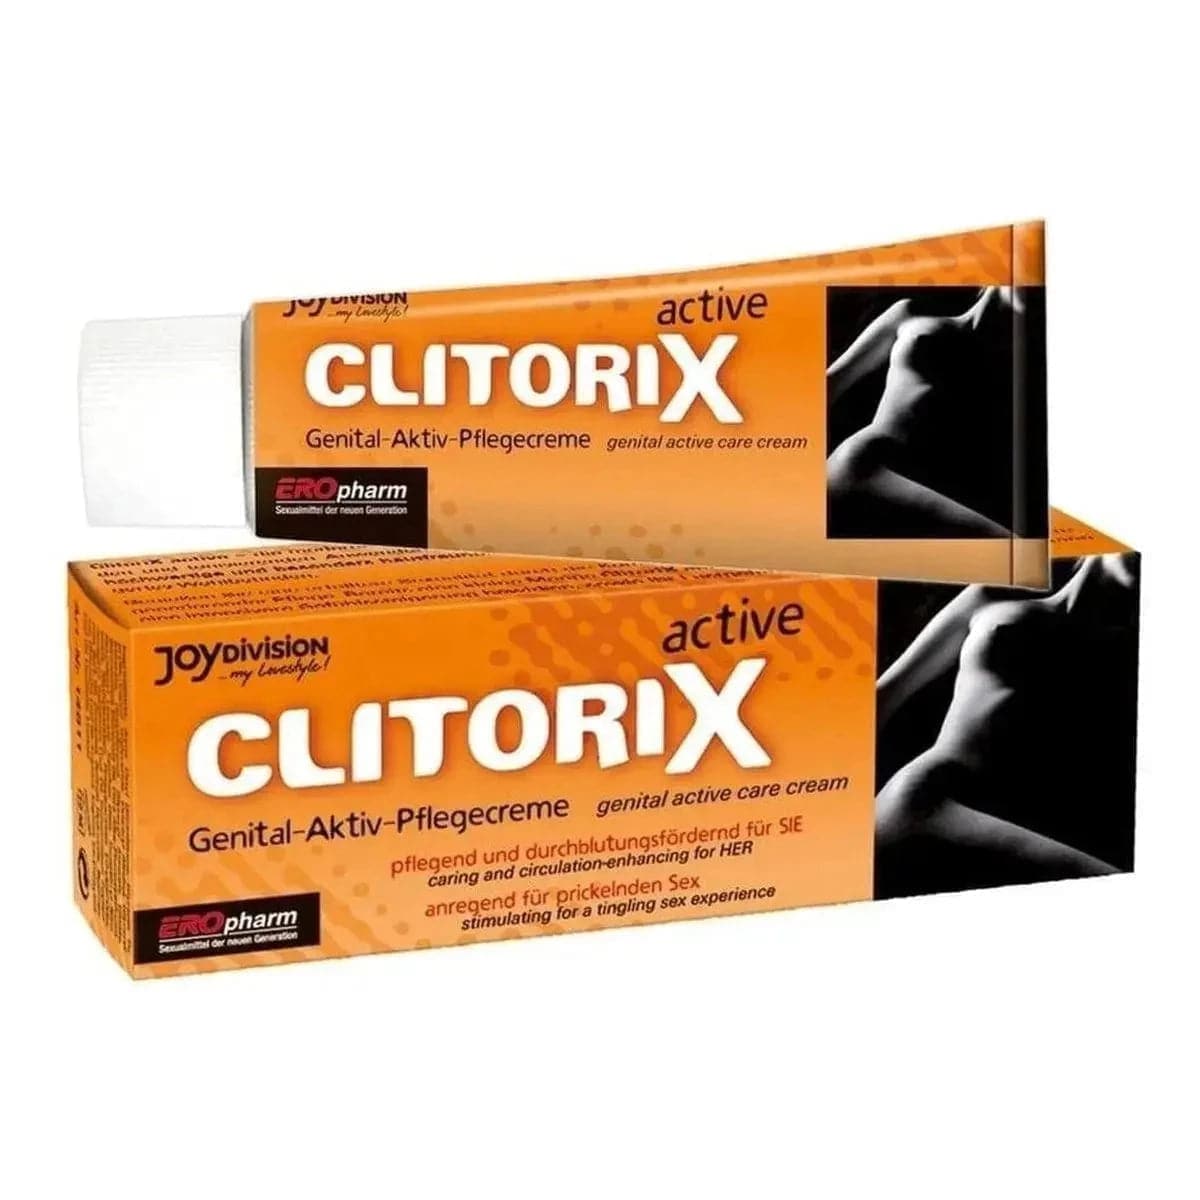 Creme Estimulante Clitorix 40ml - Impulsione sua Estimulação Sexual  Ero Pharm   